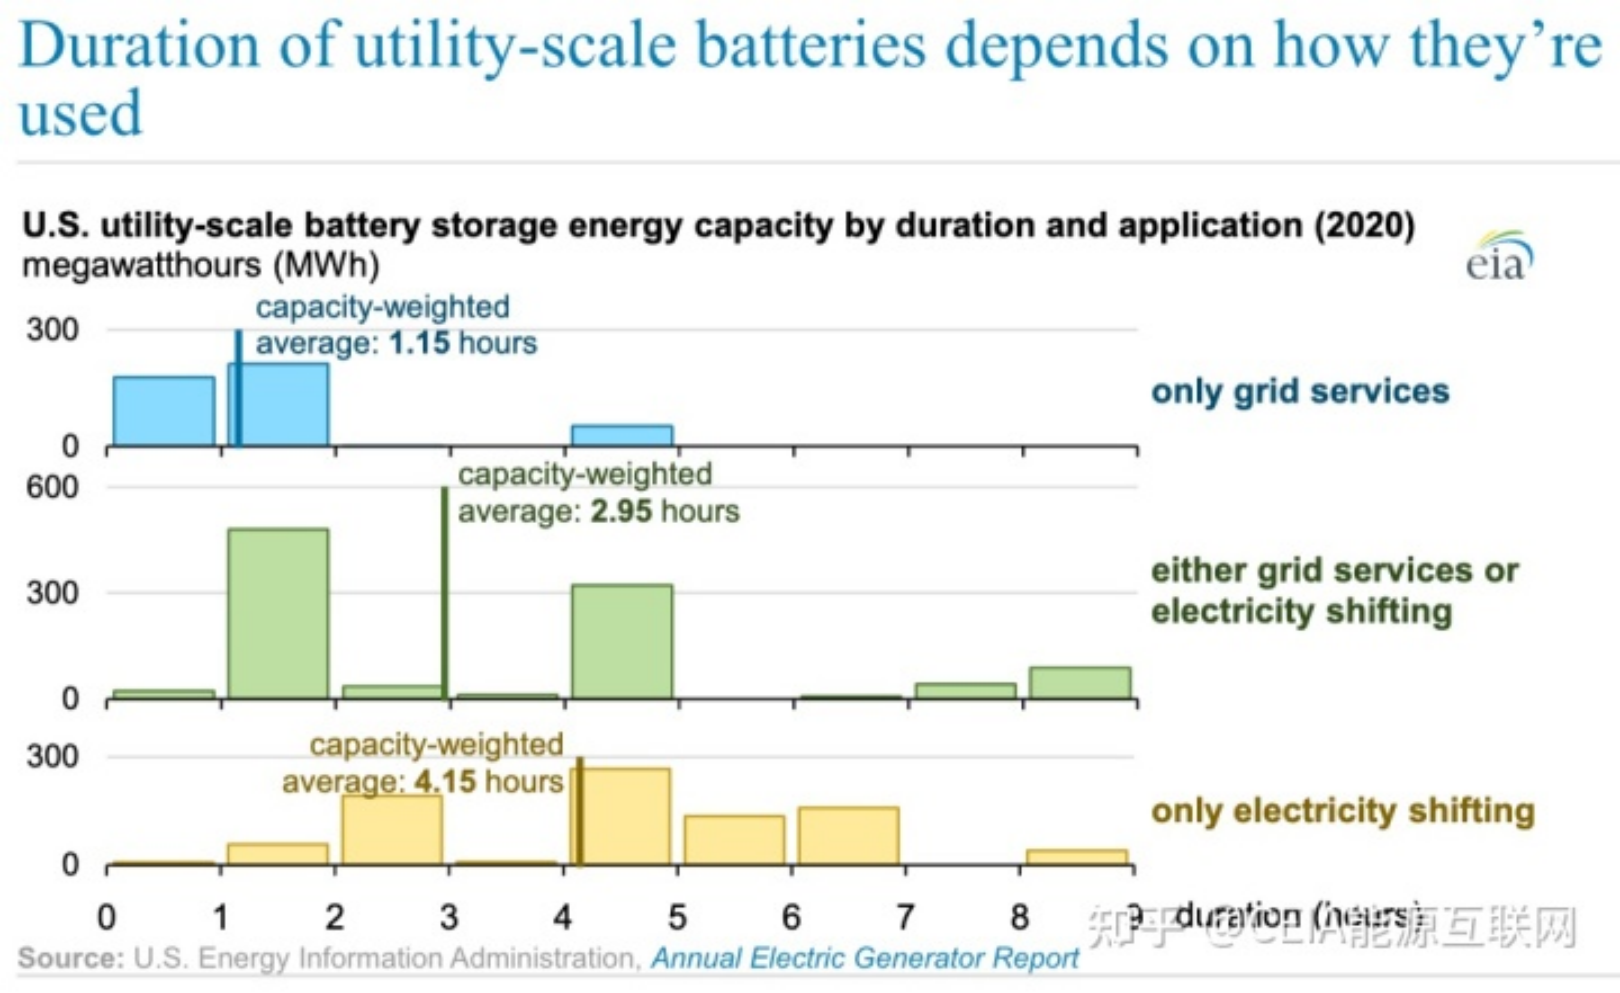 Quins són els usos de les bateries d'emmagatzematge d'energia a escala de serveis públics dels EUA?